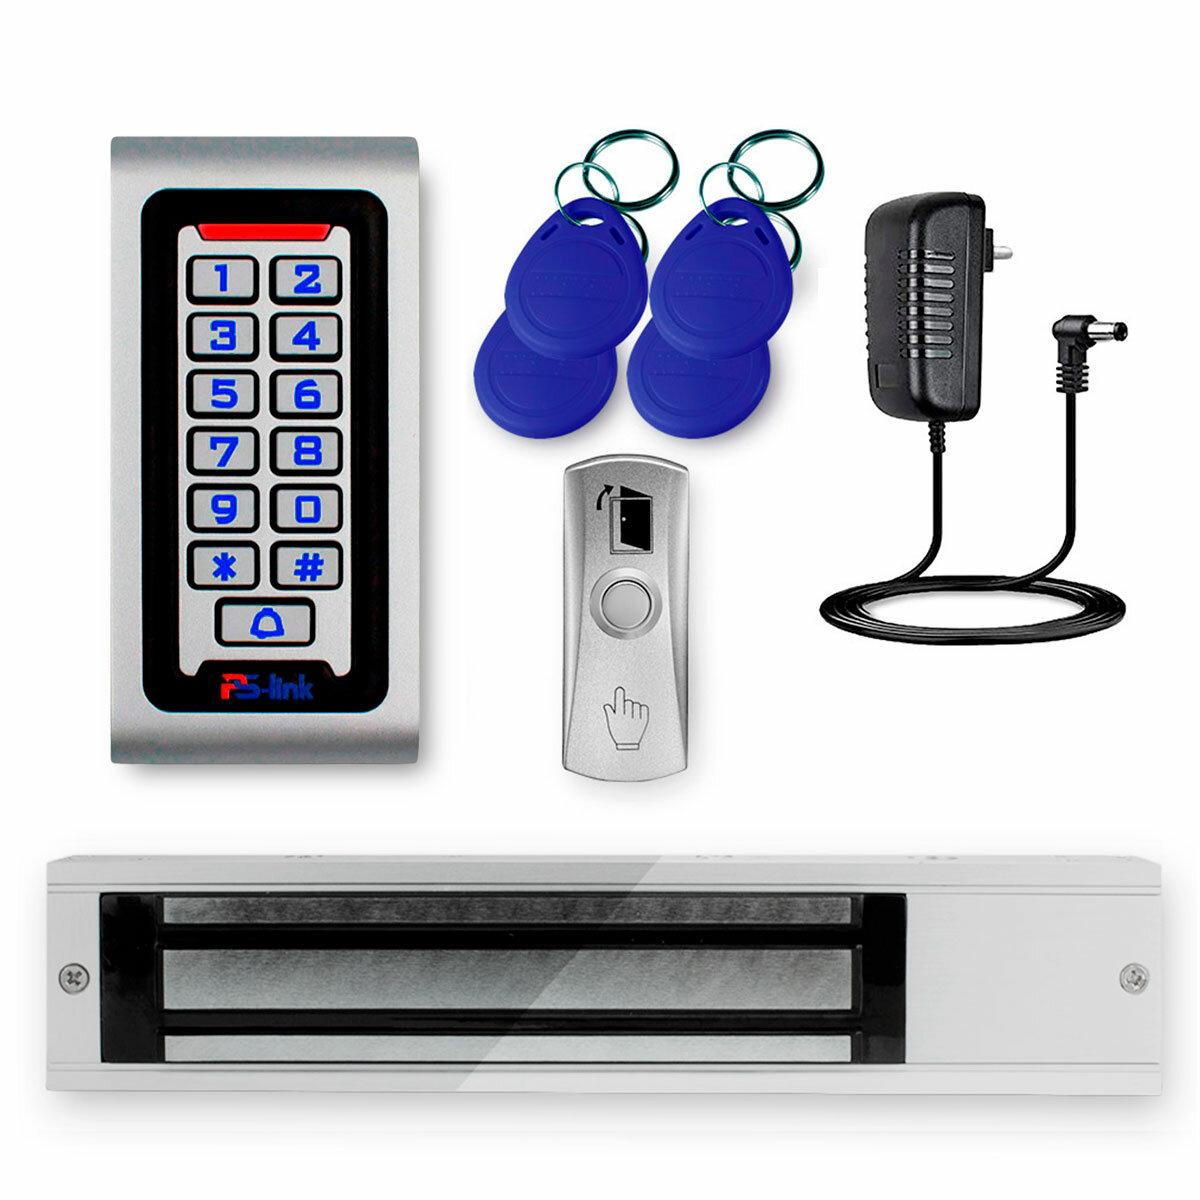 Комплект системы контроля доступа СКУД на одну дверь PS-link S601EM-WP-W-280 / магнитный замок на 280 кг / кодовая панель / RFID / WIFI